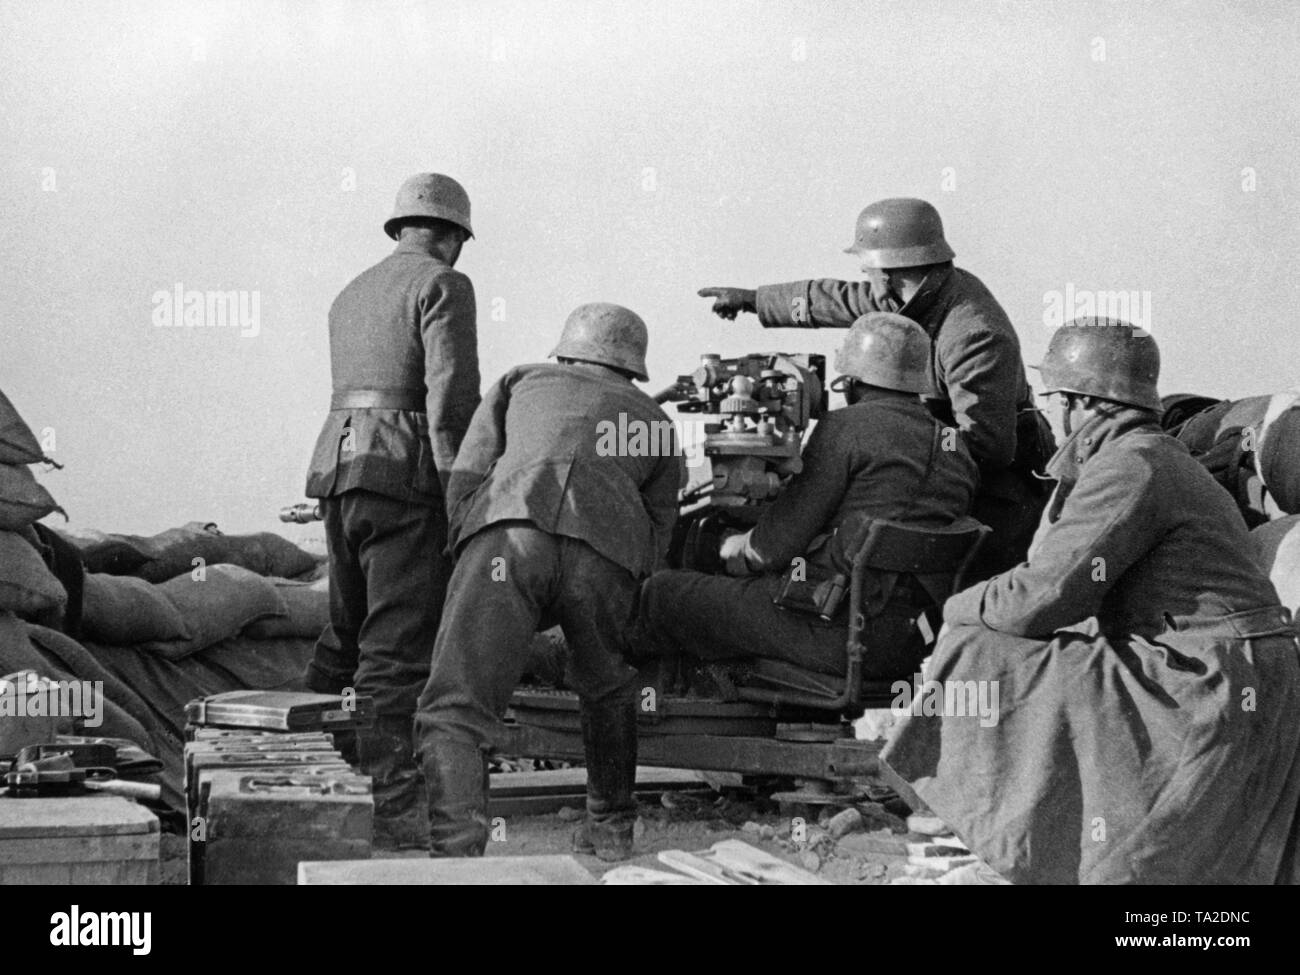 Foto non datata di un anti-unità aeromobile della Legione Condor durante il dispiegamento nella guerra civile spagnola. Cinque uomini stanno prendendo mirano a bersagli di terra con un 2cm FLAK 39 in una posizione di contrappeso. A sinistra nella parte anteriore ci sono le casse di munizioni. I soldati sono indossando M35 elmetti di acciaio. Foto Stock